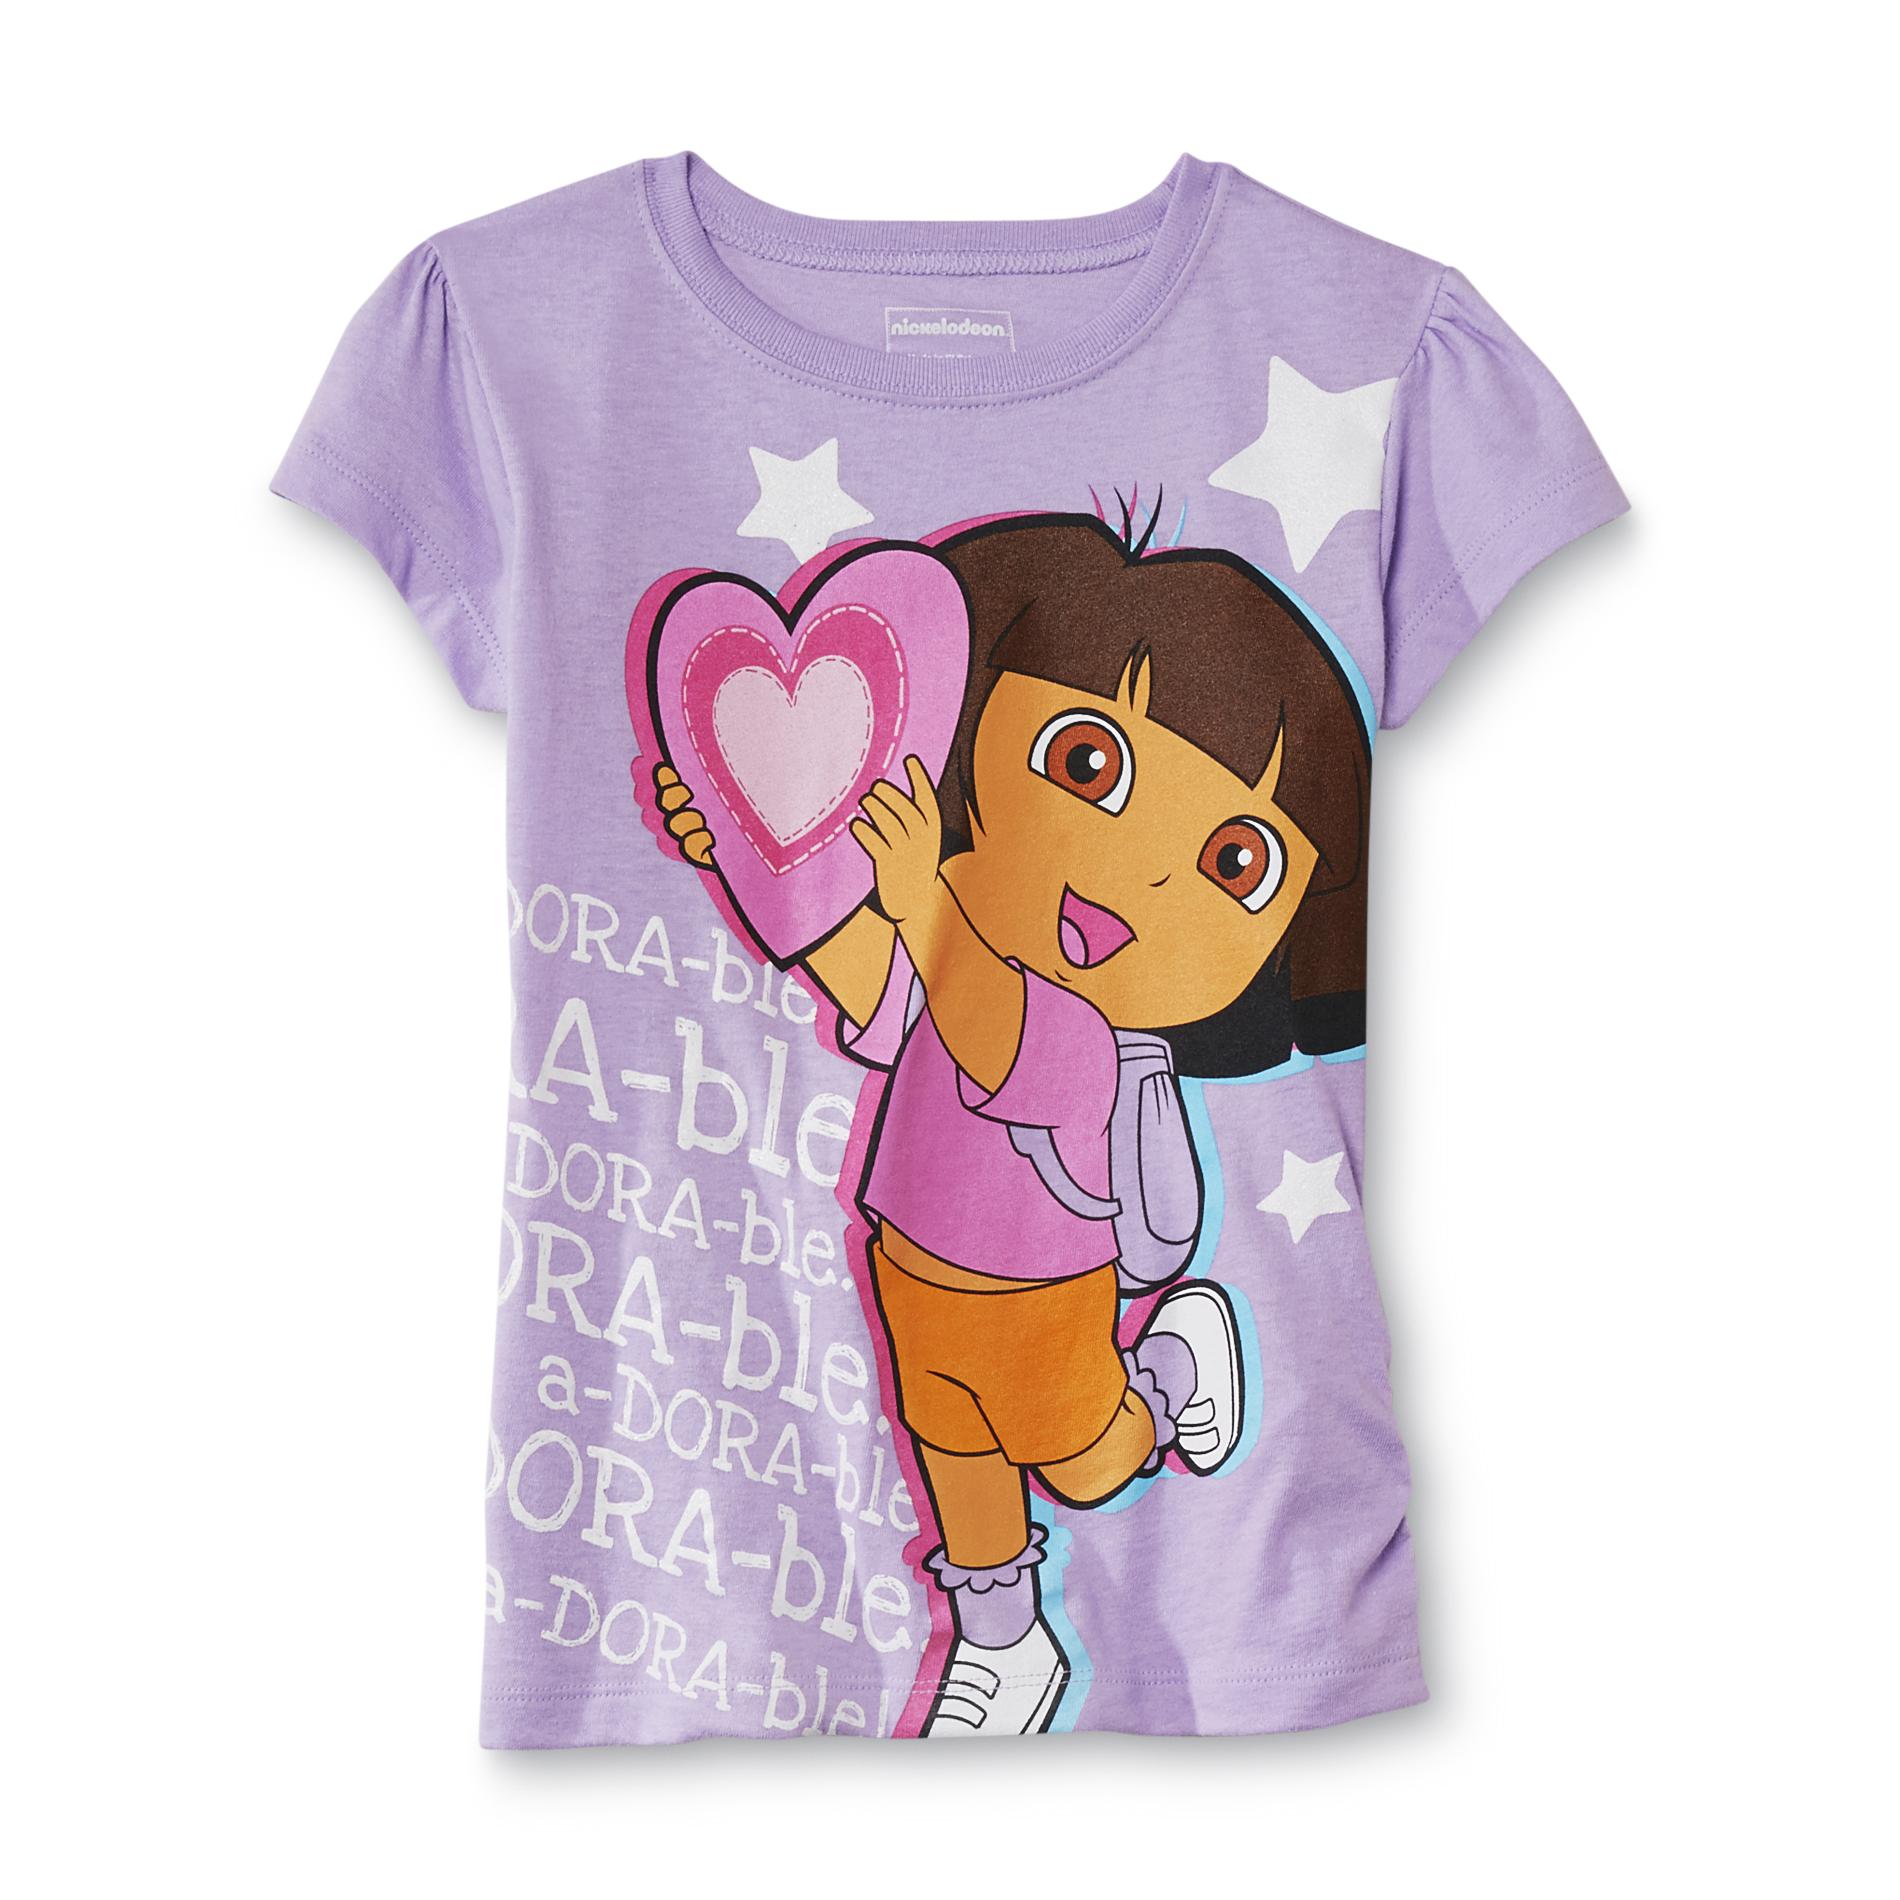 Nickelodeon Dora the Explorer Girl's T-Shirt